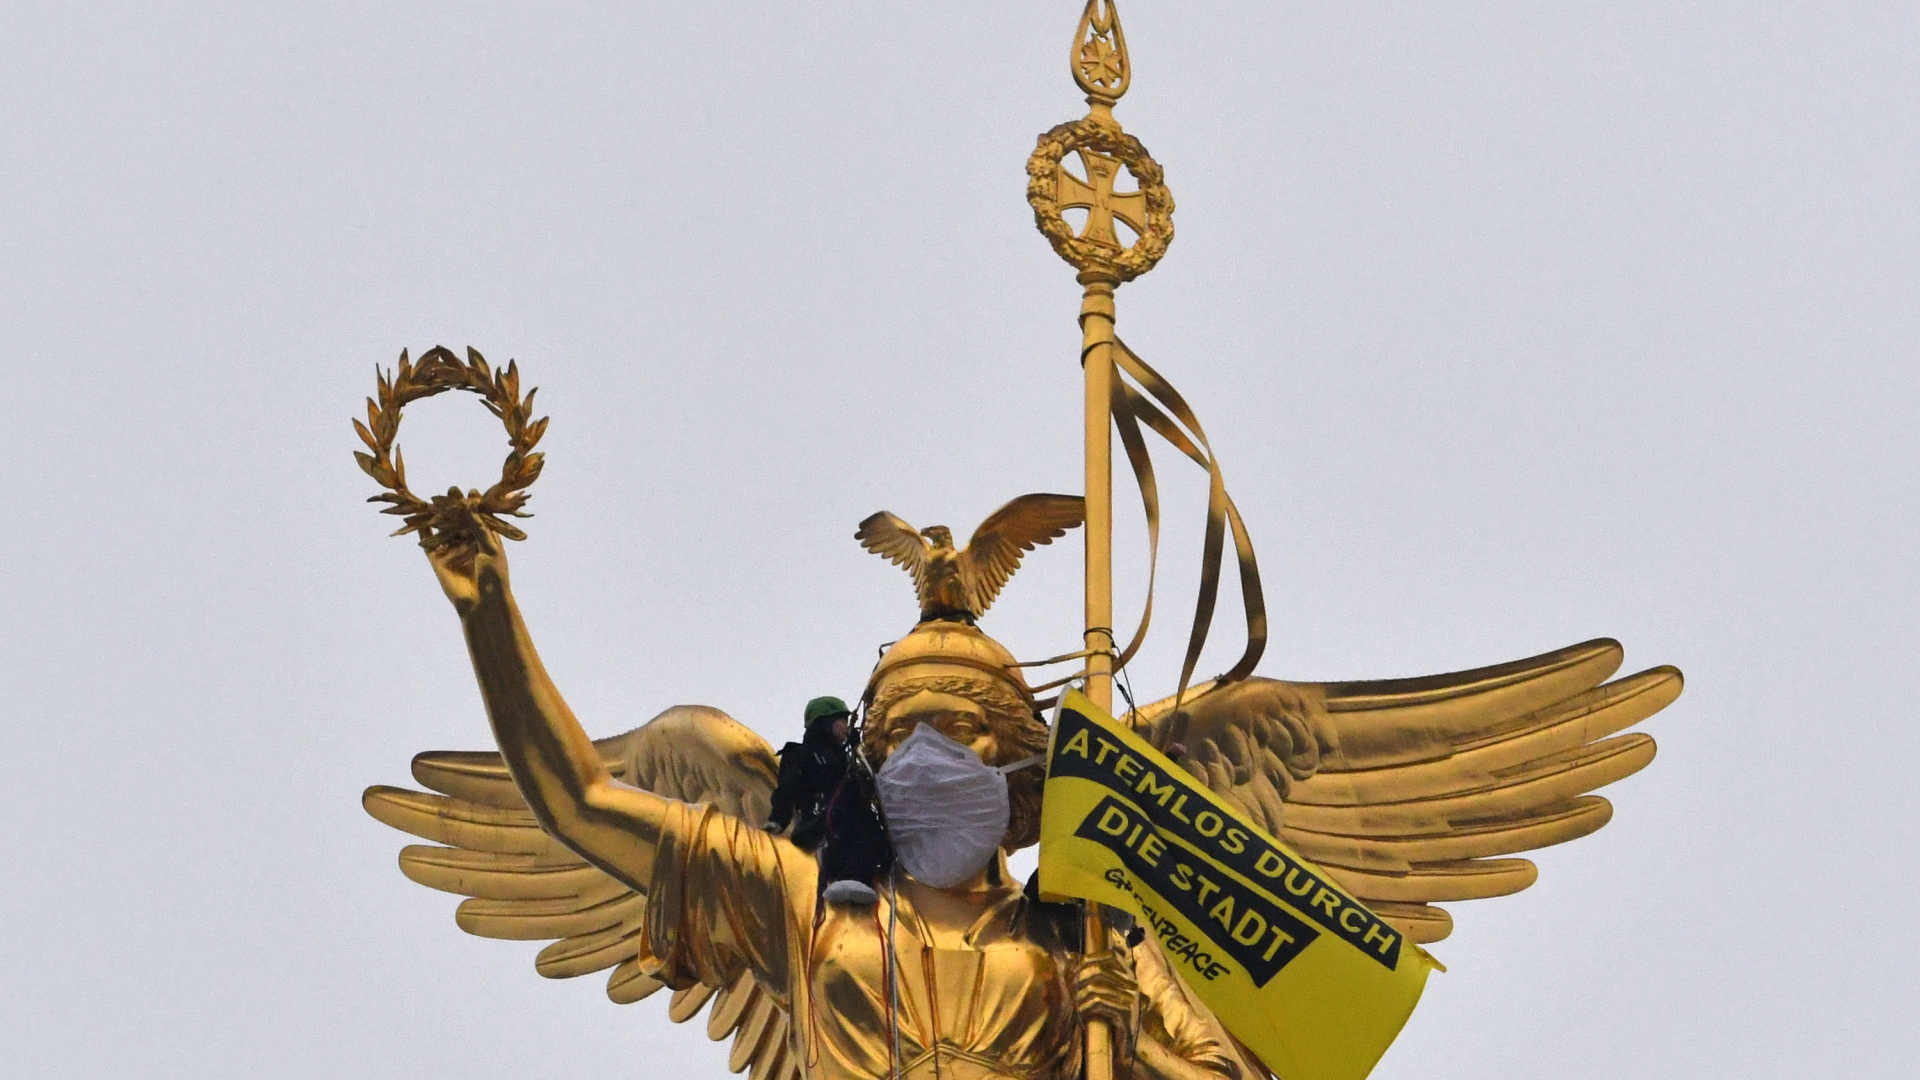 Bei einer Protestaktion gegen die hohe Umweltverschmutzung hat Greenpeace der Berliner Siegessäule eine Atemschutzmaske verpasst. | dpa